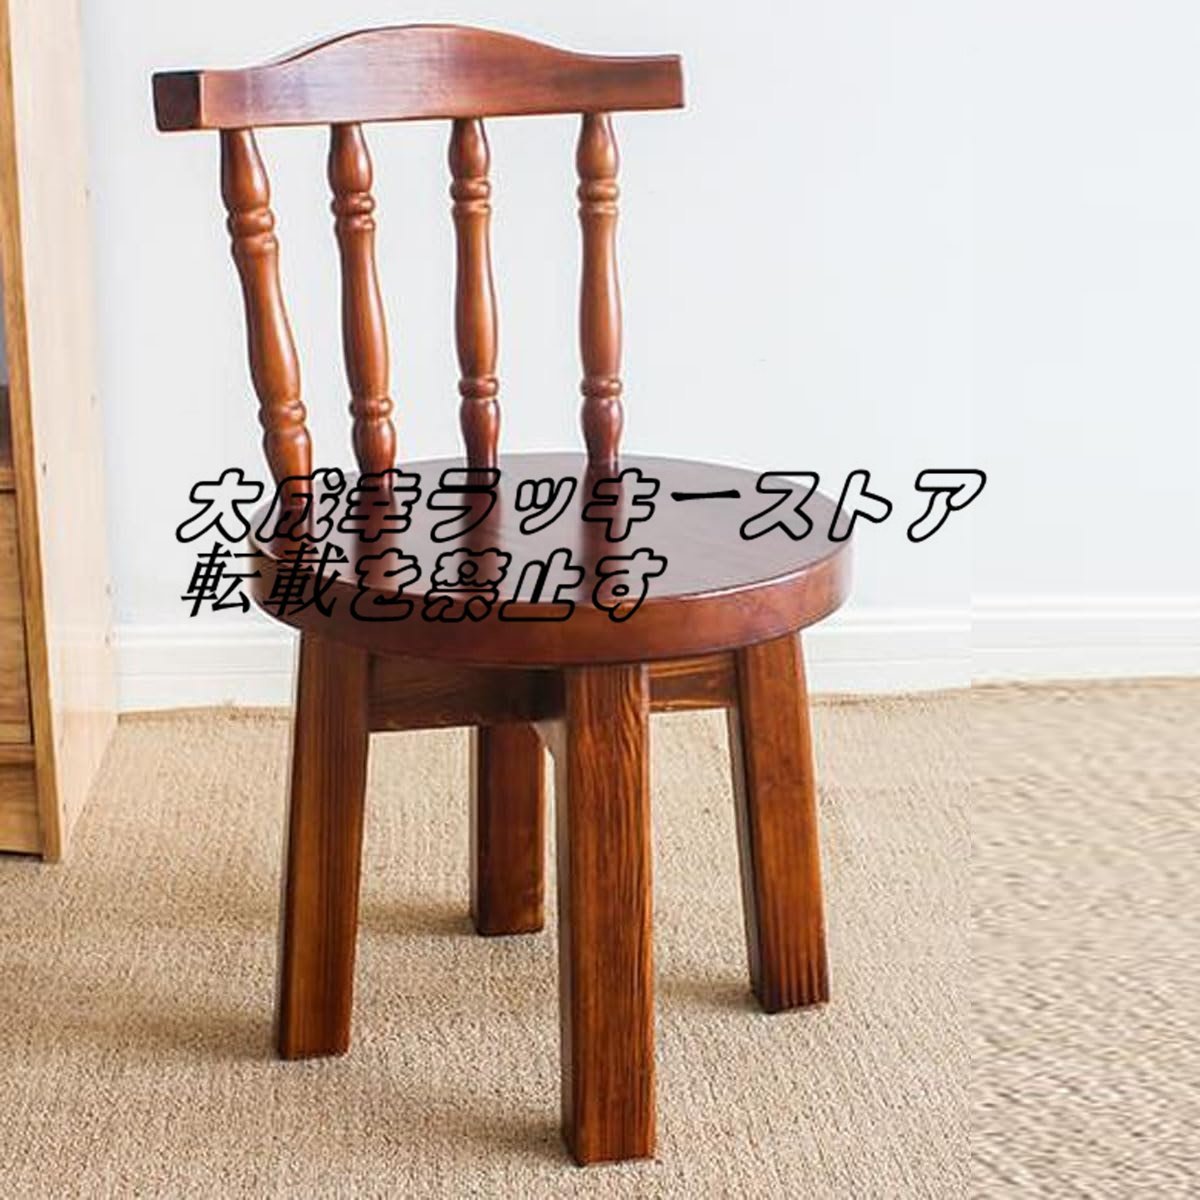 木製チェア ソリッドウッド製チェア 背もたれスツール 小型チェア 家庭用低スツール 丸型スツール 椅子 家具 インテリア z876